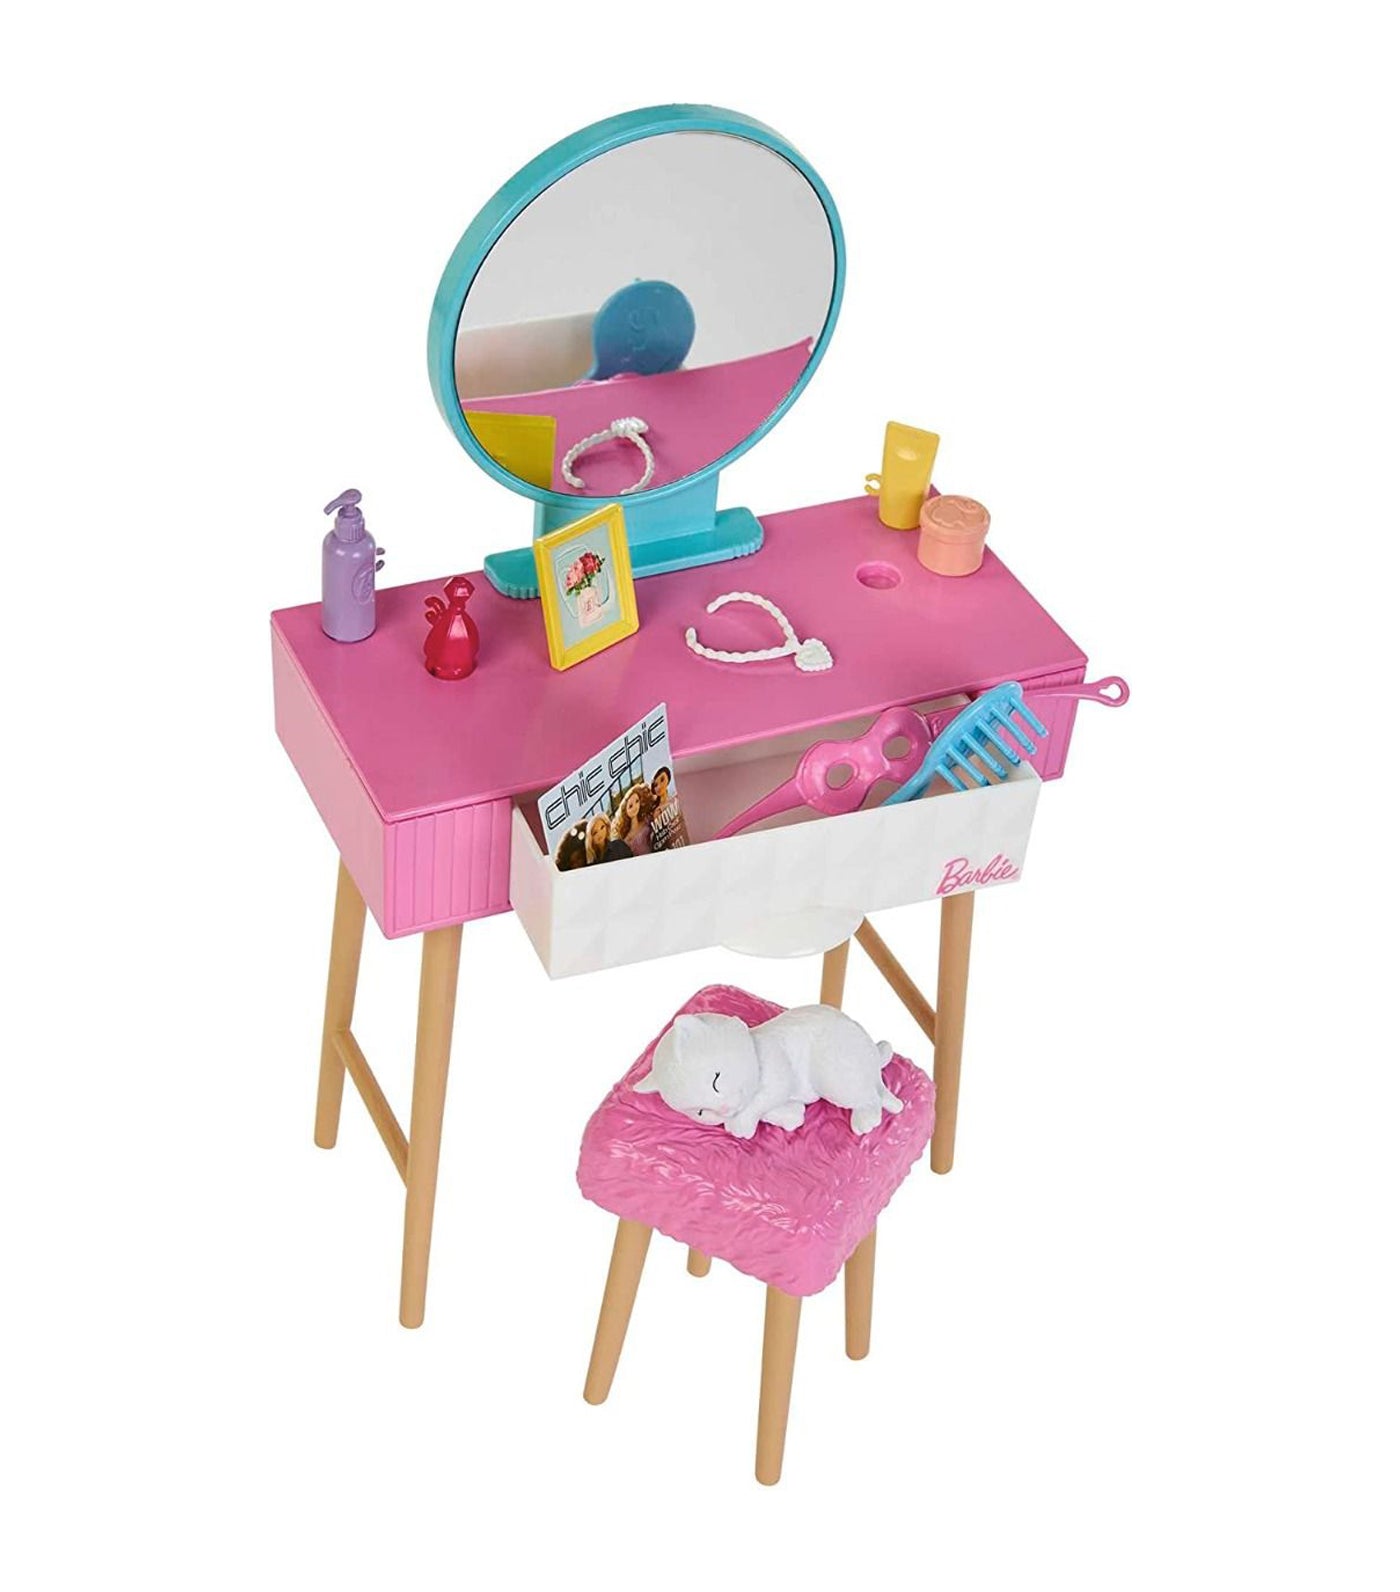 Barbie® Fab Barbie Doll & Bedroom Playset